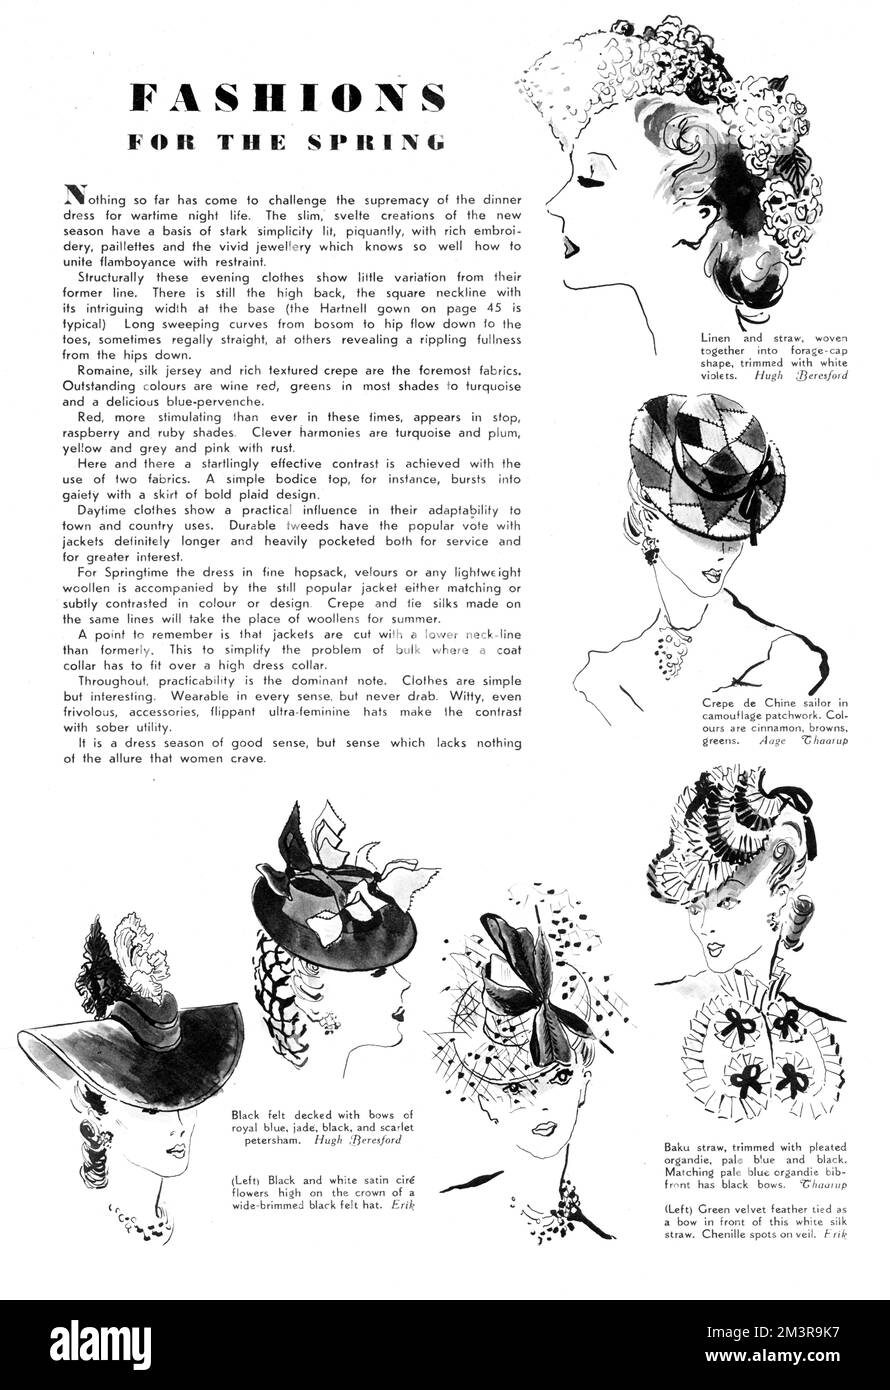 Moderedaktion für den kommenden Frühling, verziert mit sechs Zeichnungen brandneuer Mützen für Frauen. Zu den abgebildeten Gegenständen gehören zwei Hüte des berühmten dänischen Hutmachers Aage Thaarup. Datum: 1940 Stockfoto